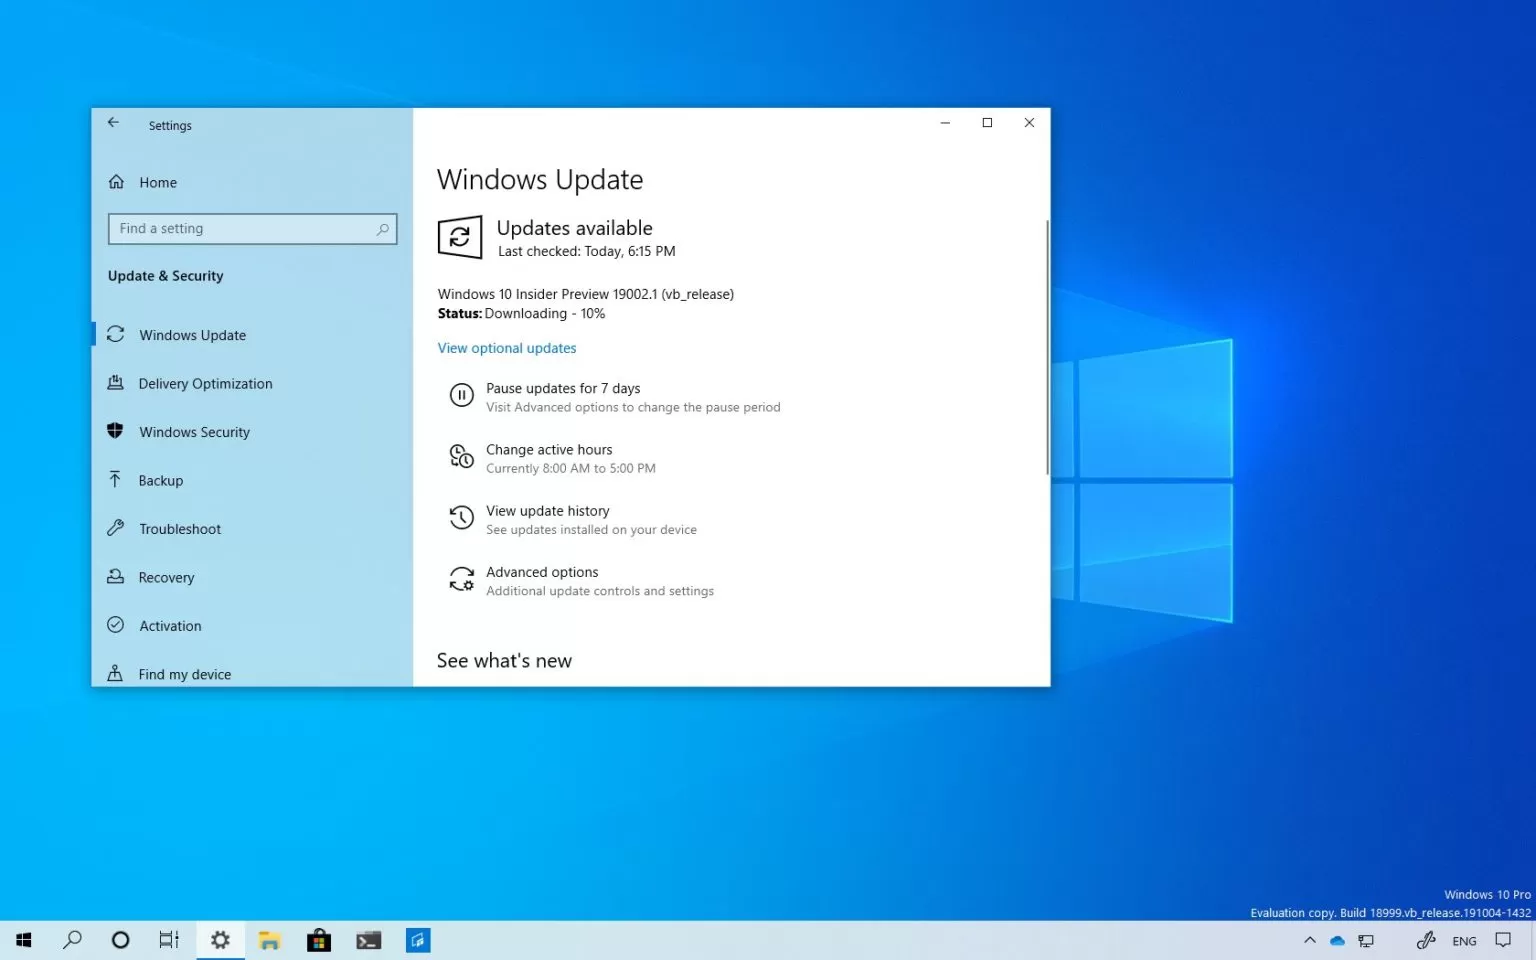 Windows 10 20h1